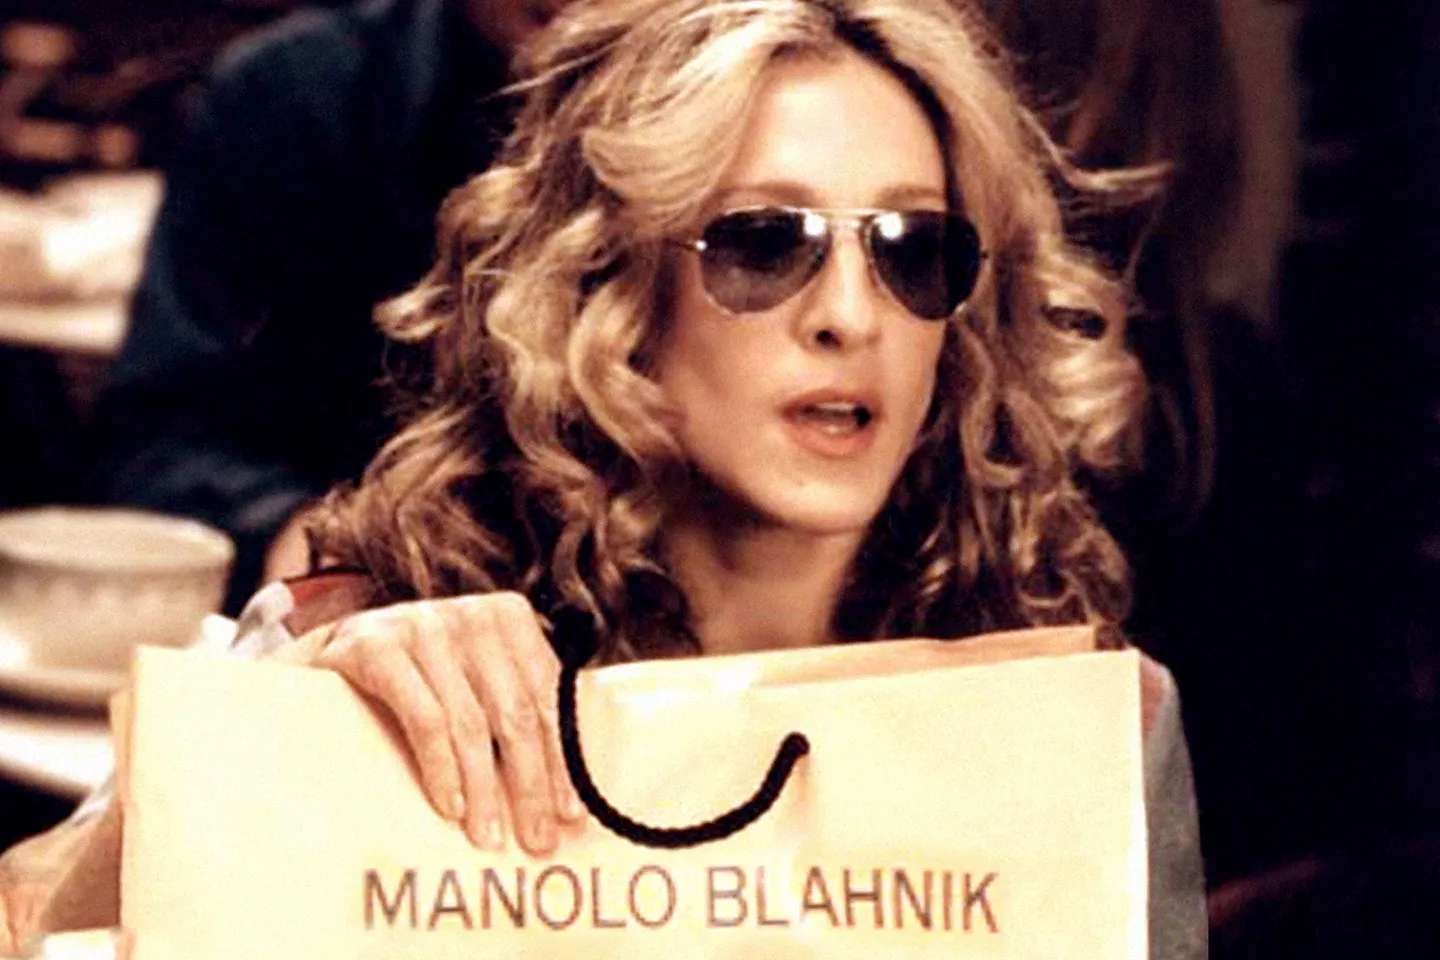 Imagem da série "Sex and The City": Carrie Bradshaw mostrando sua compra, segurando a sacola Manolo Blahnik.